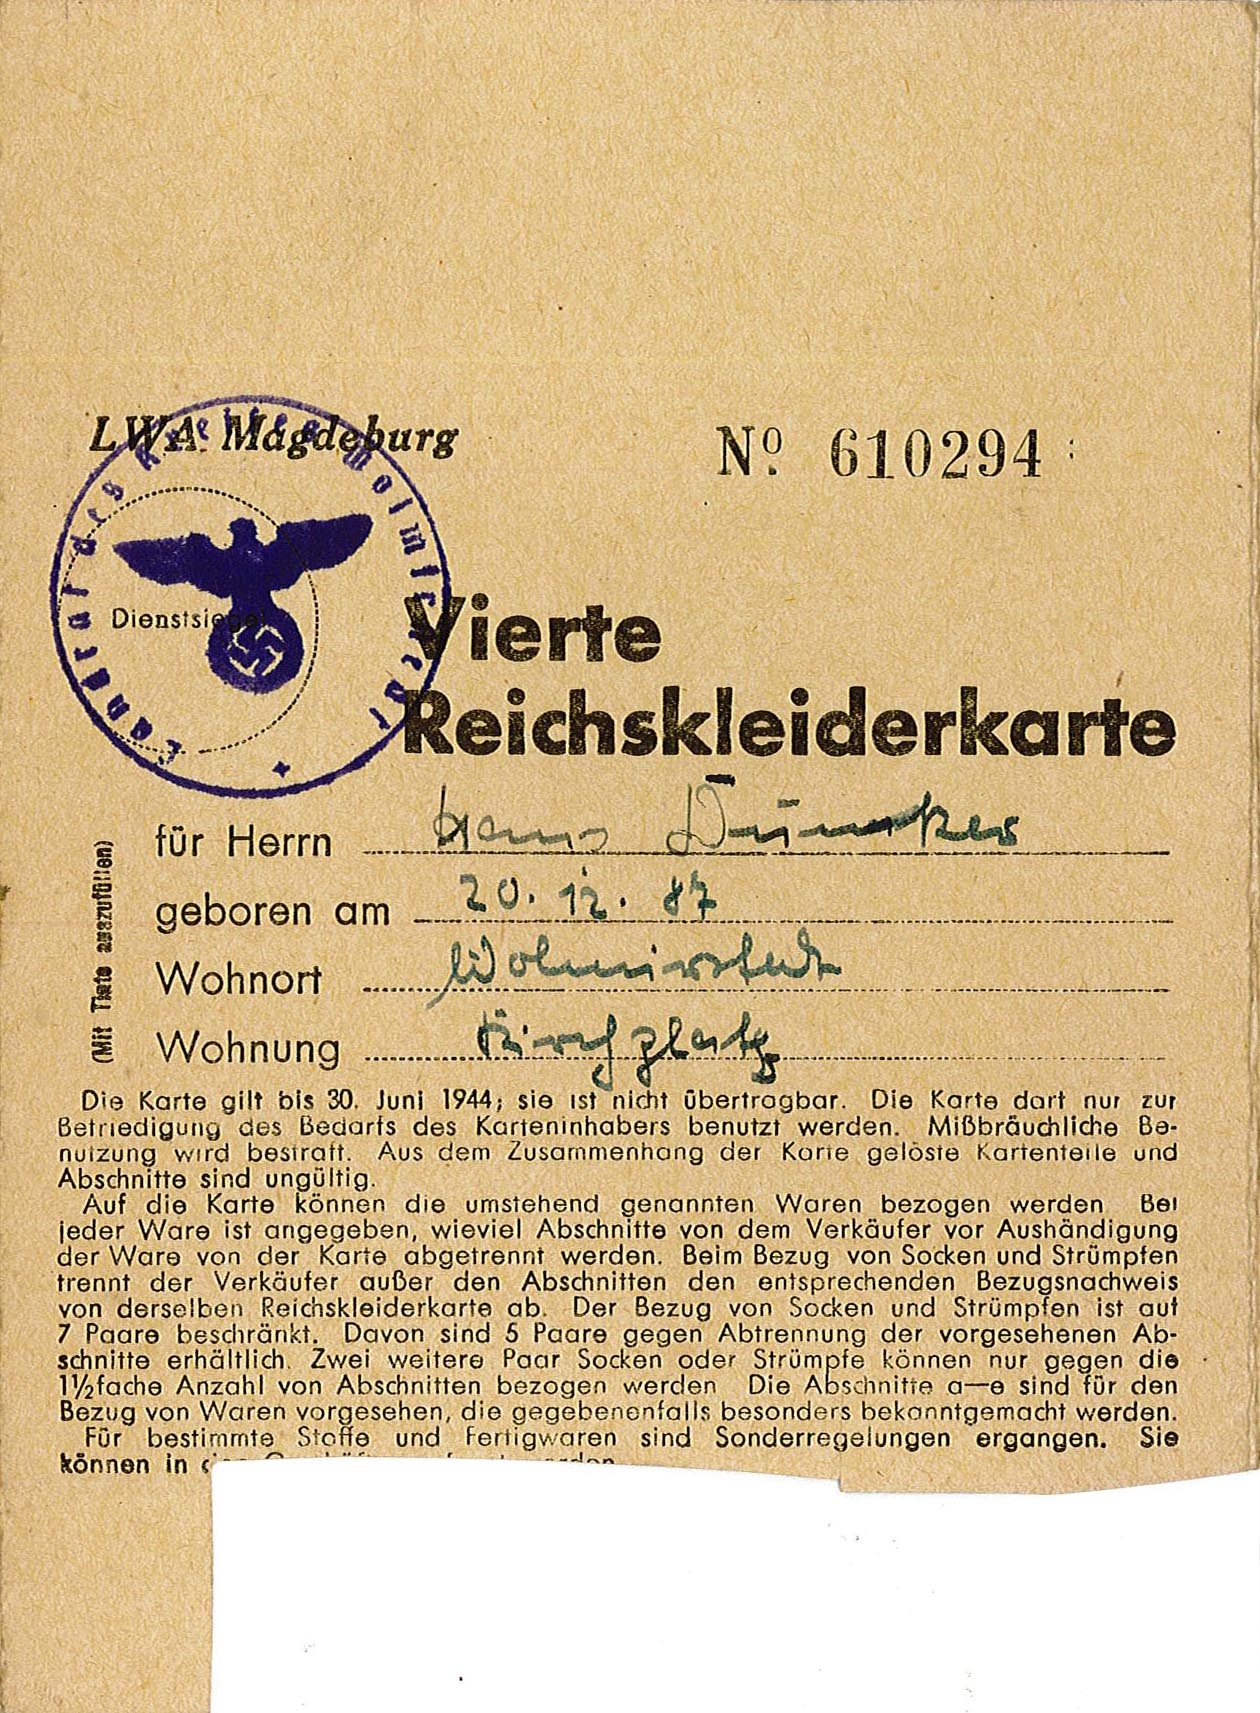 Vierte Reichskleiderkarte für Hermann Möhlmann, 1944 (Museum Wolmirstedt RR-F)